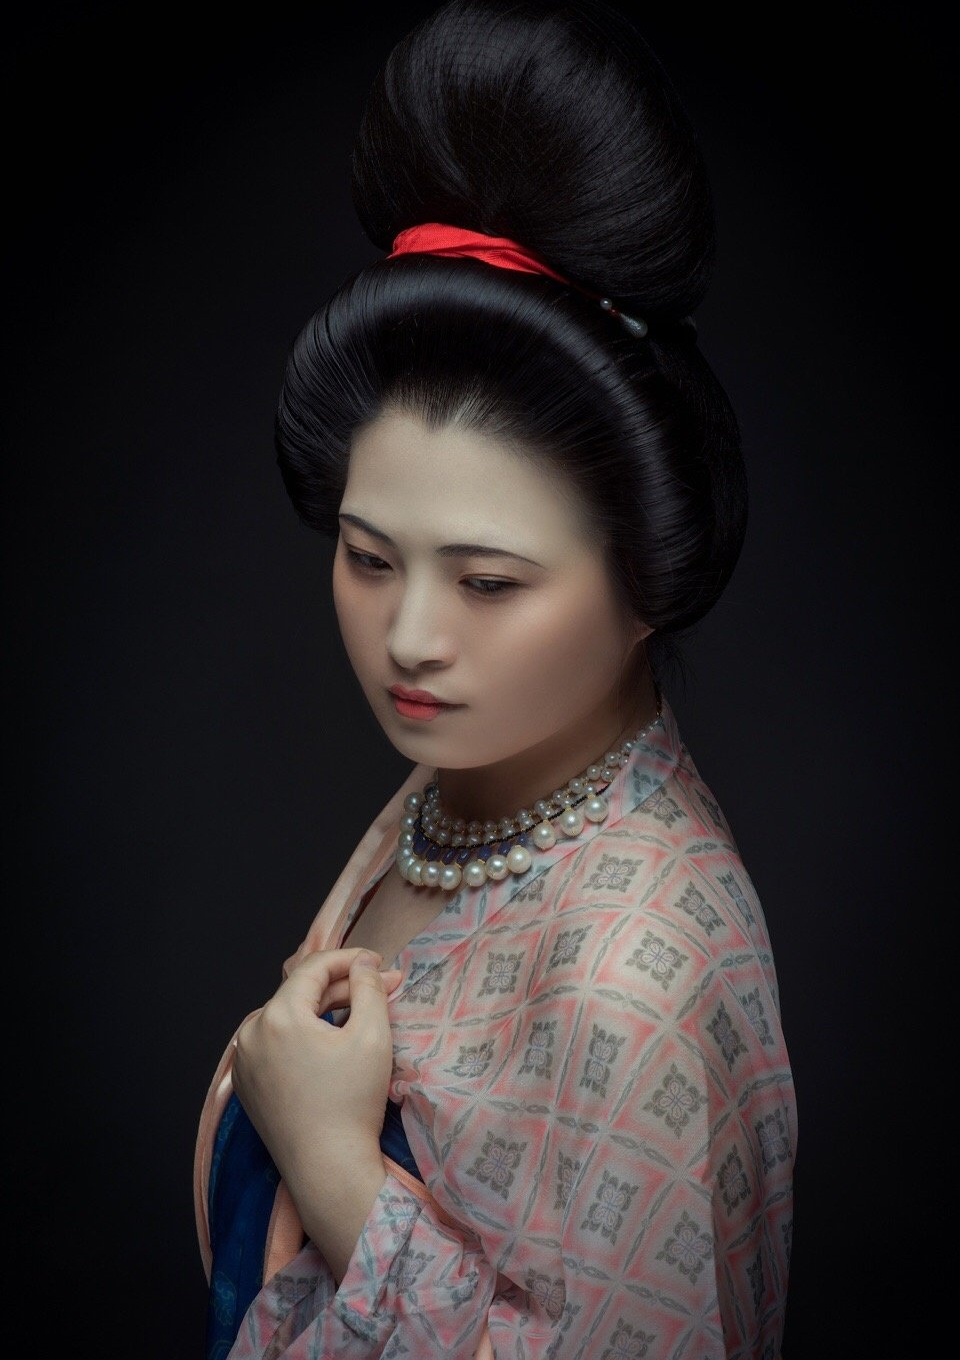 中唐时期女子的妆容是怎样的?很多人觉得丑,但我觉得很美